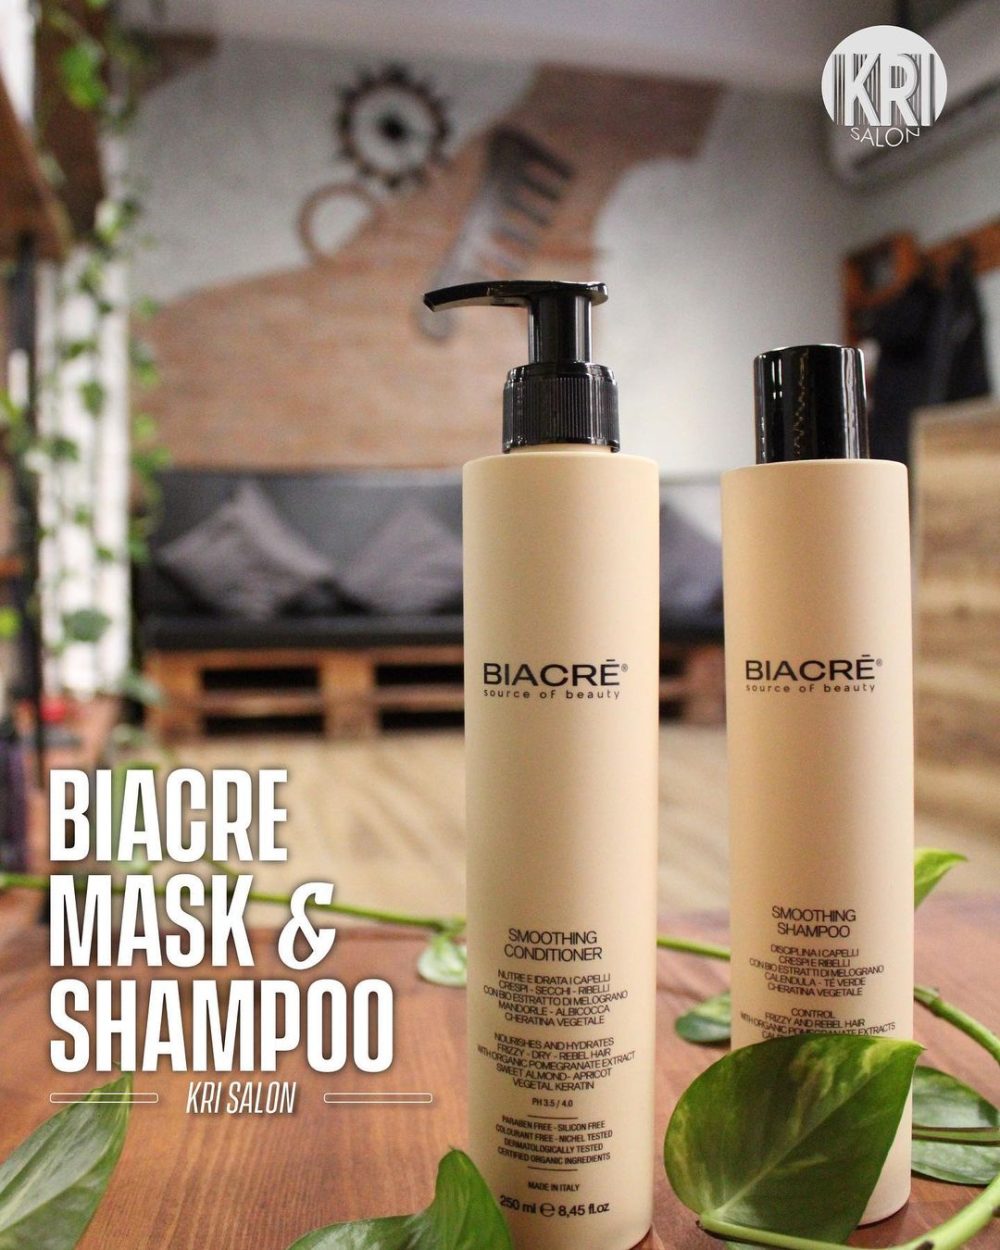 Biacre Mask and Shampoo